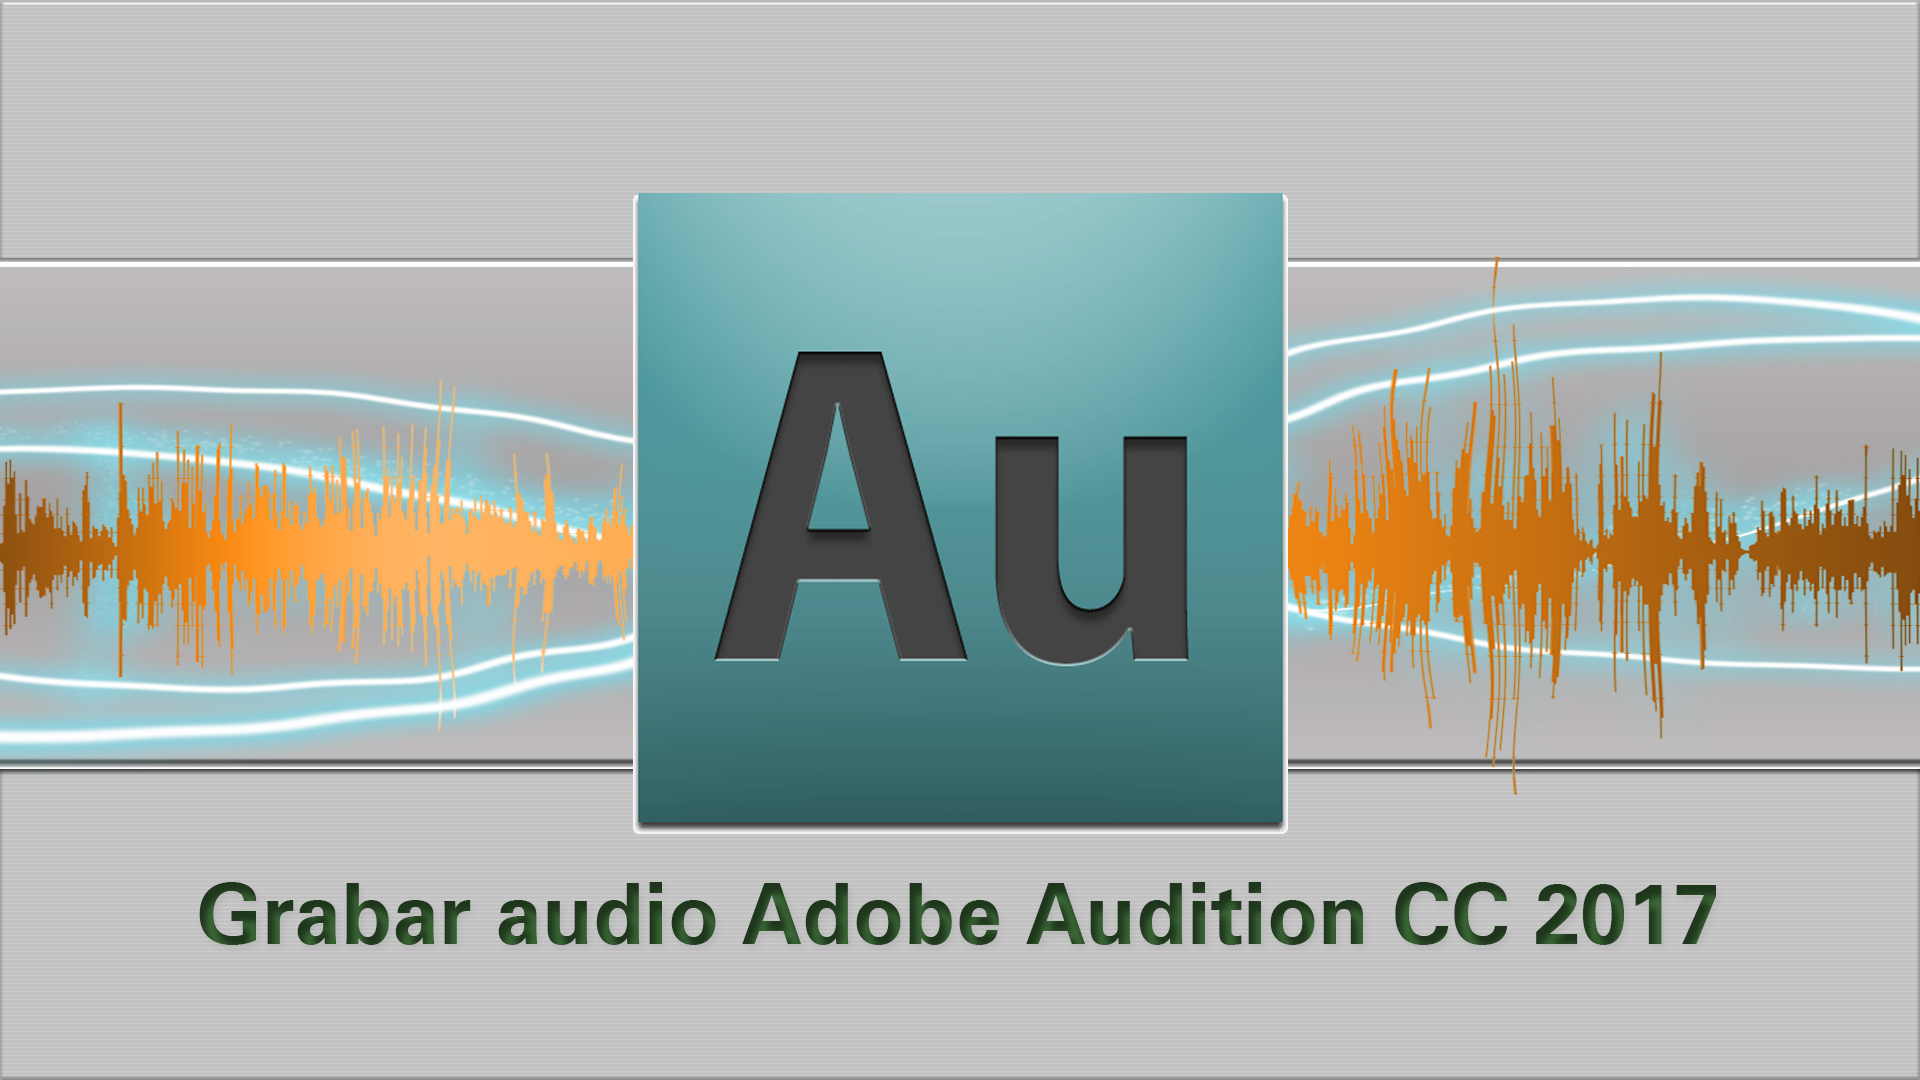 Tutorial Audition: Cómo grabar un audio en Adobe Audition CC 2017